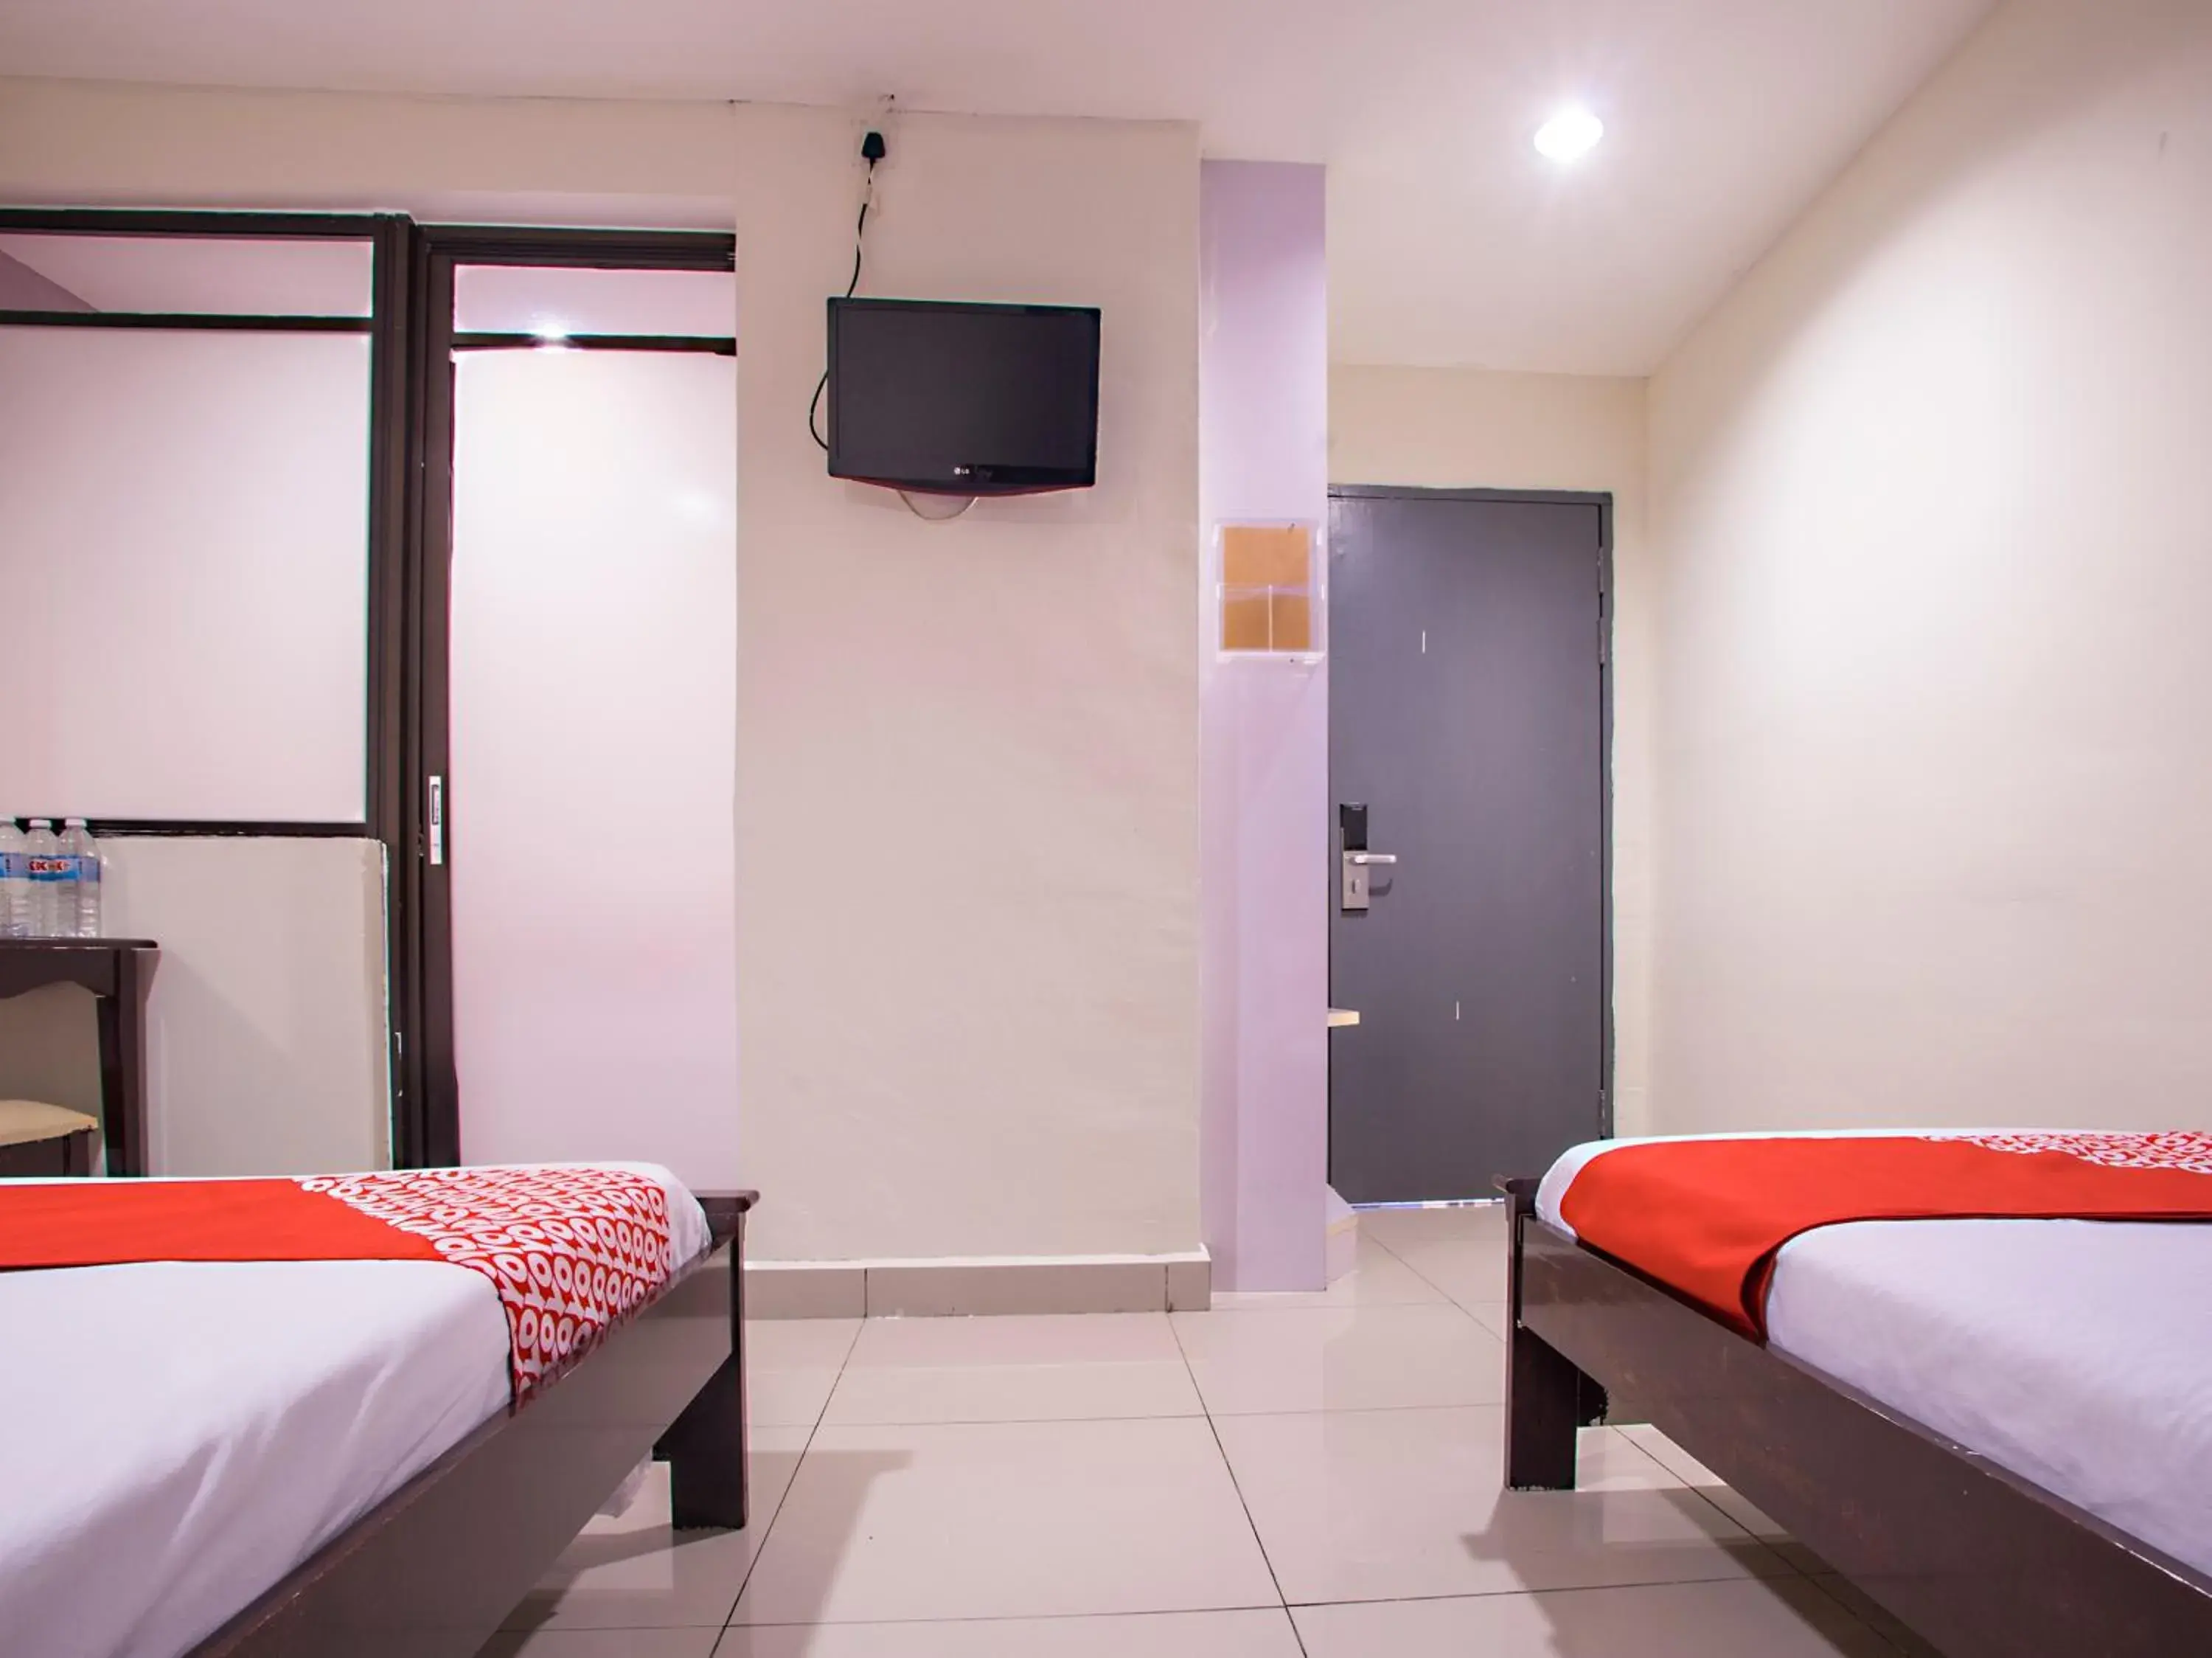 Bedroom, TV/Entertainment Center in OYO 43961 Kk Hotel Kajang